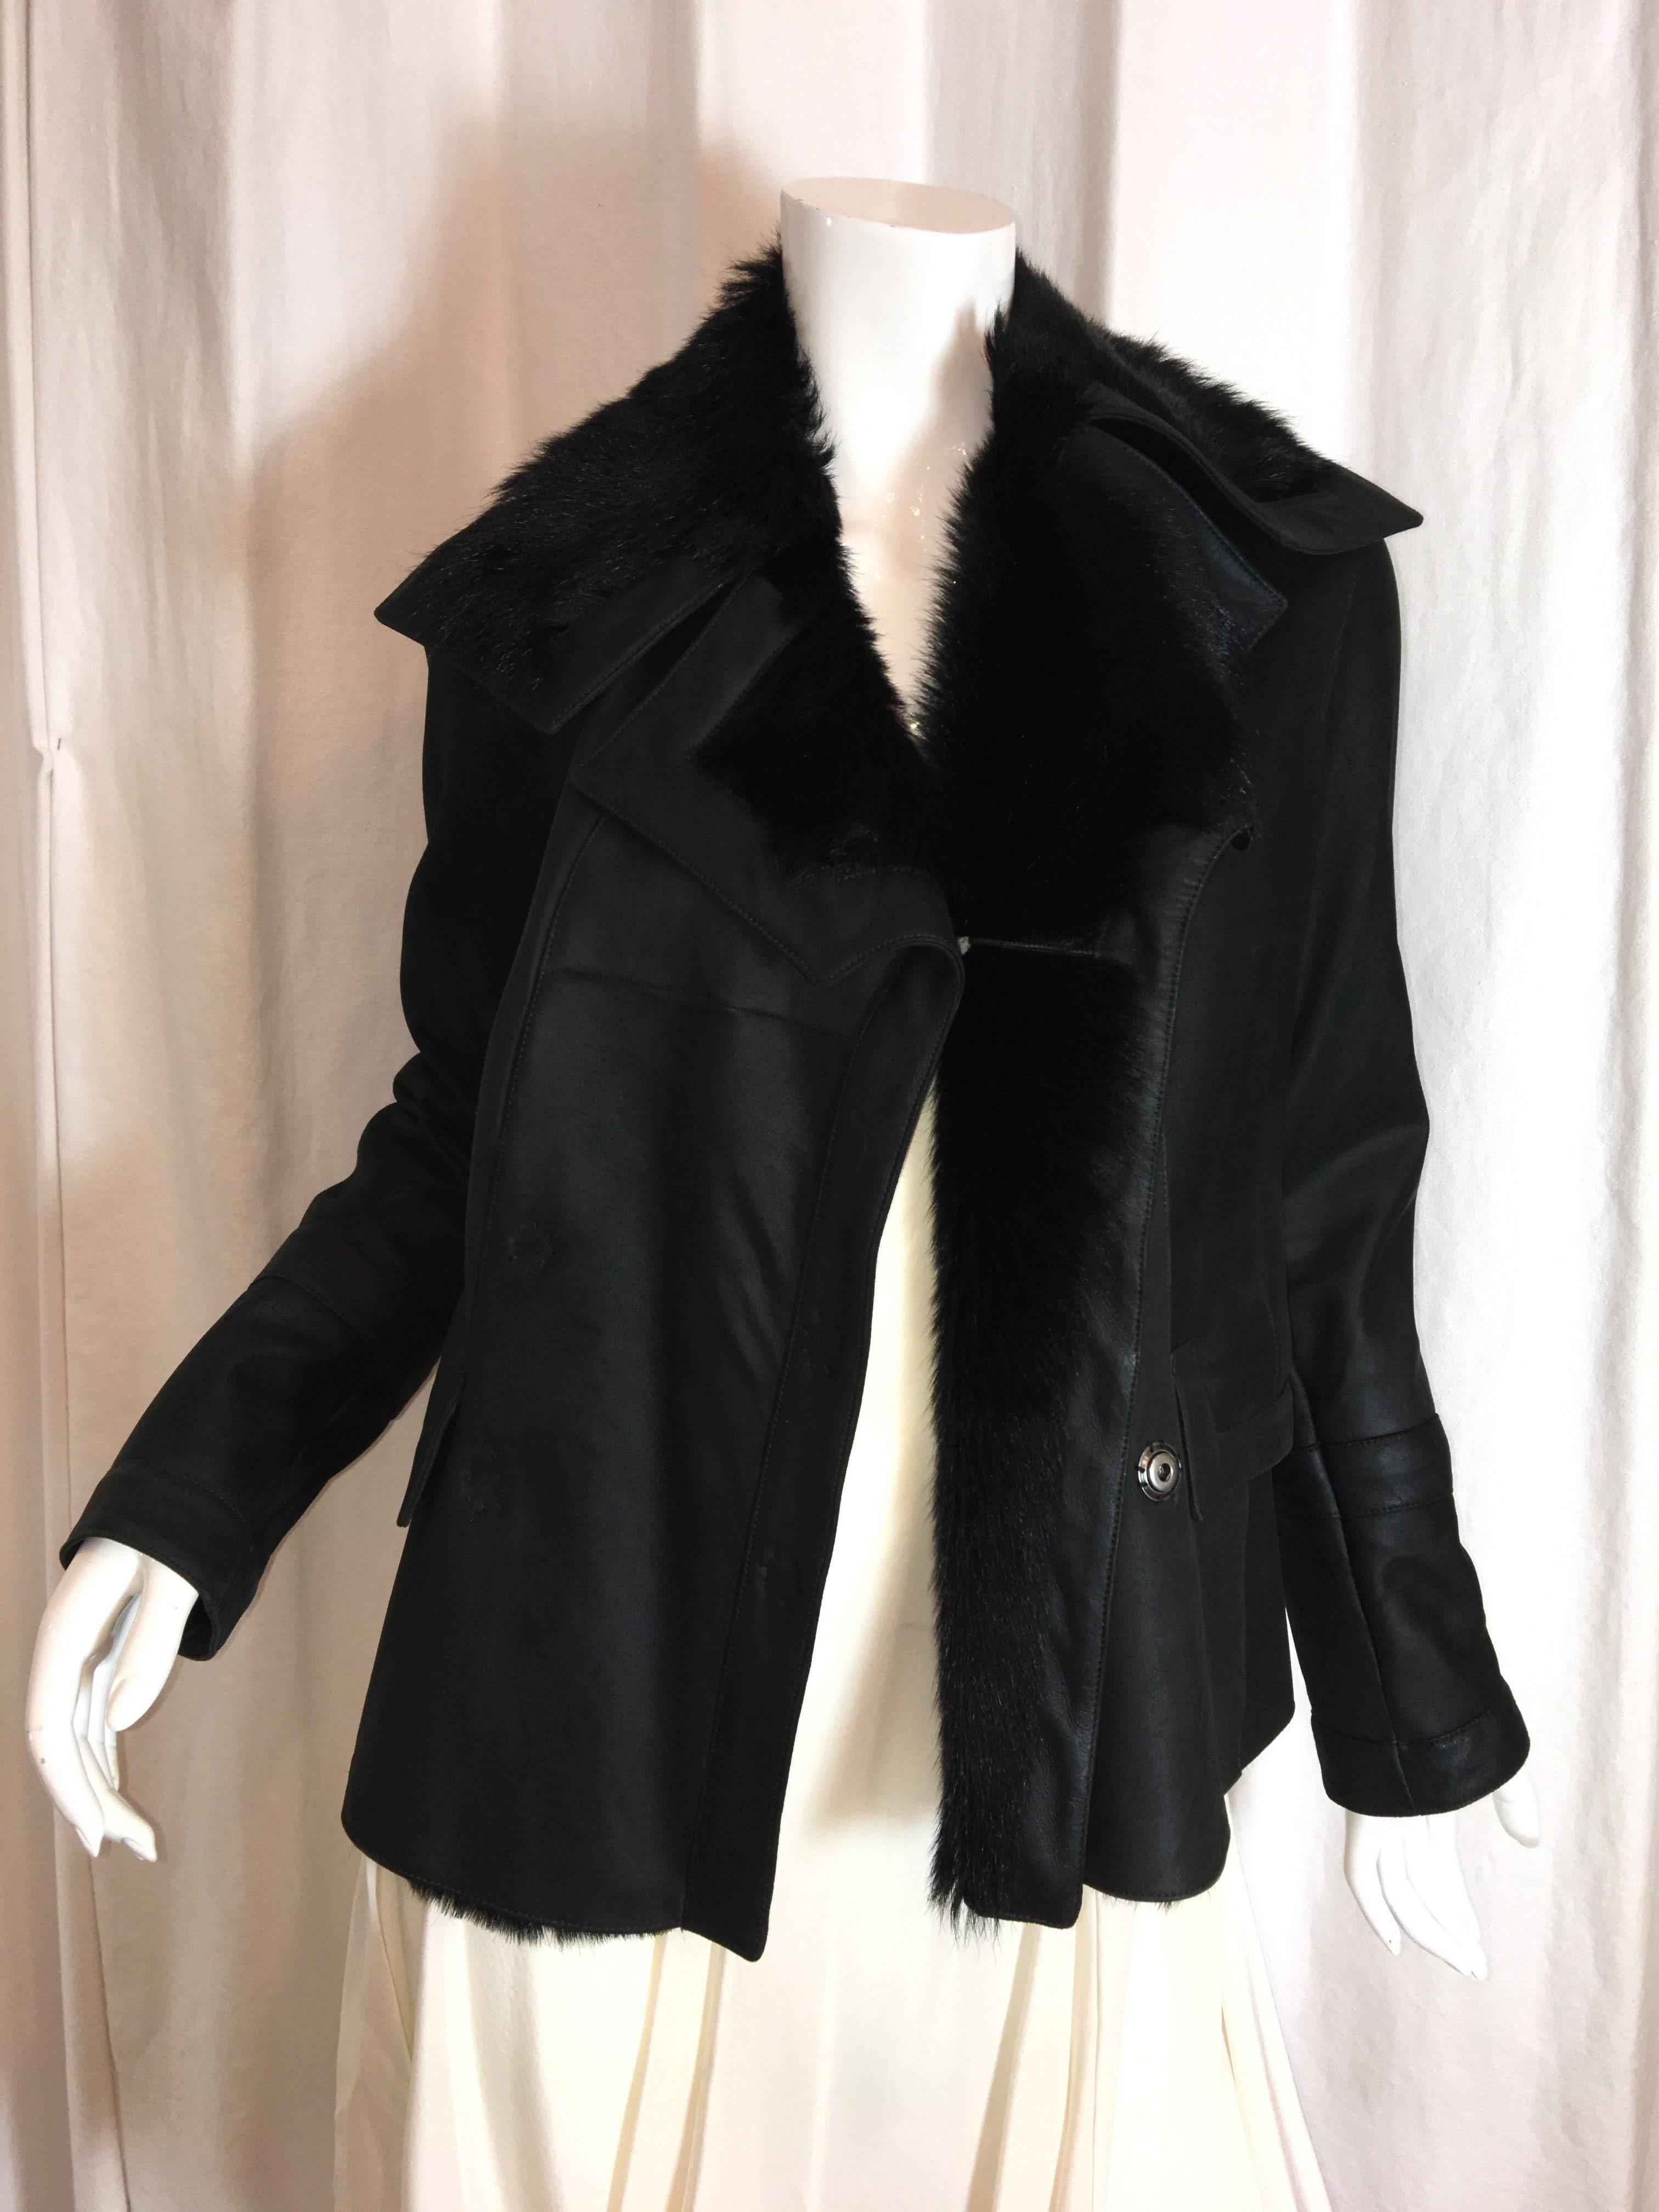 Waist length Christian Dior Coat. Black fully fur lined. Chevrette. 